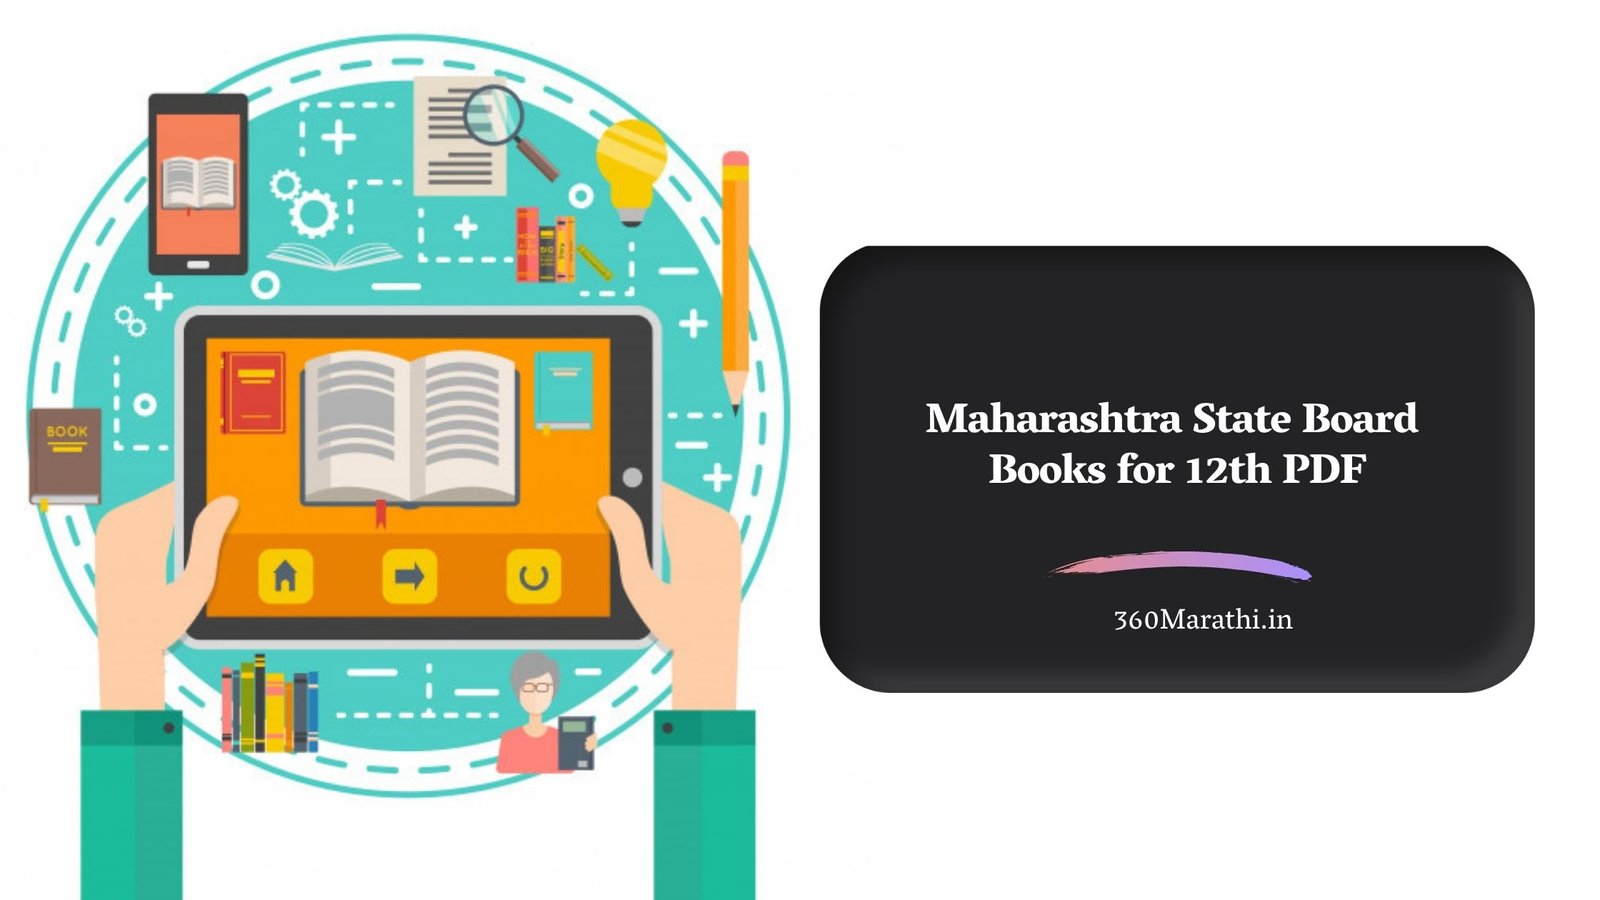 Maharashtra State Board Books for 12th PDF